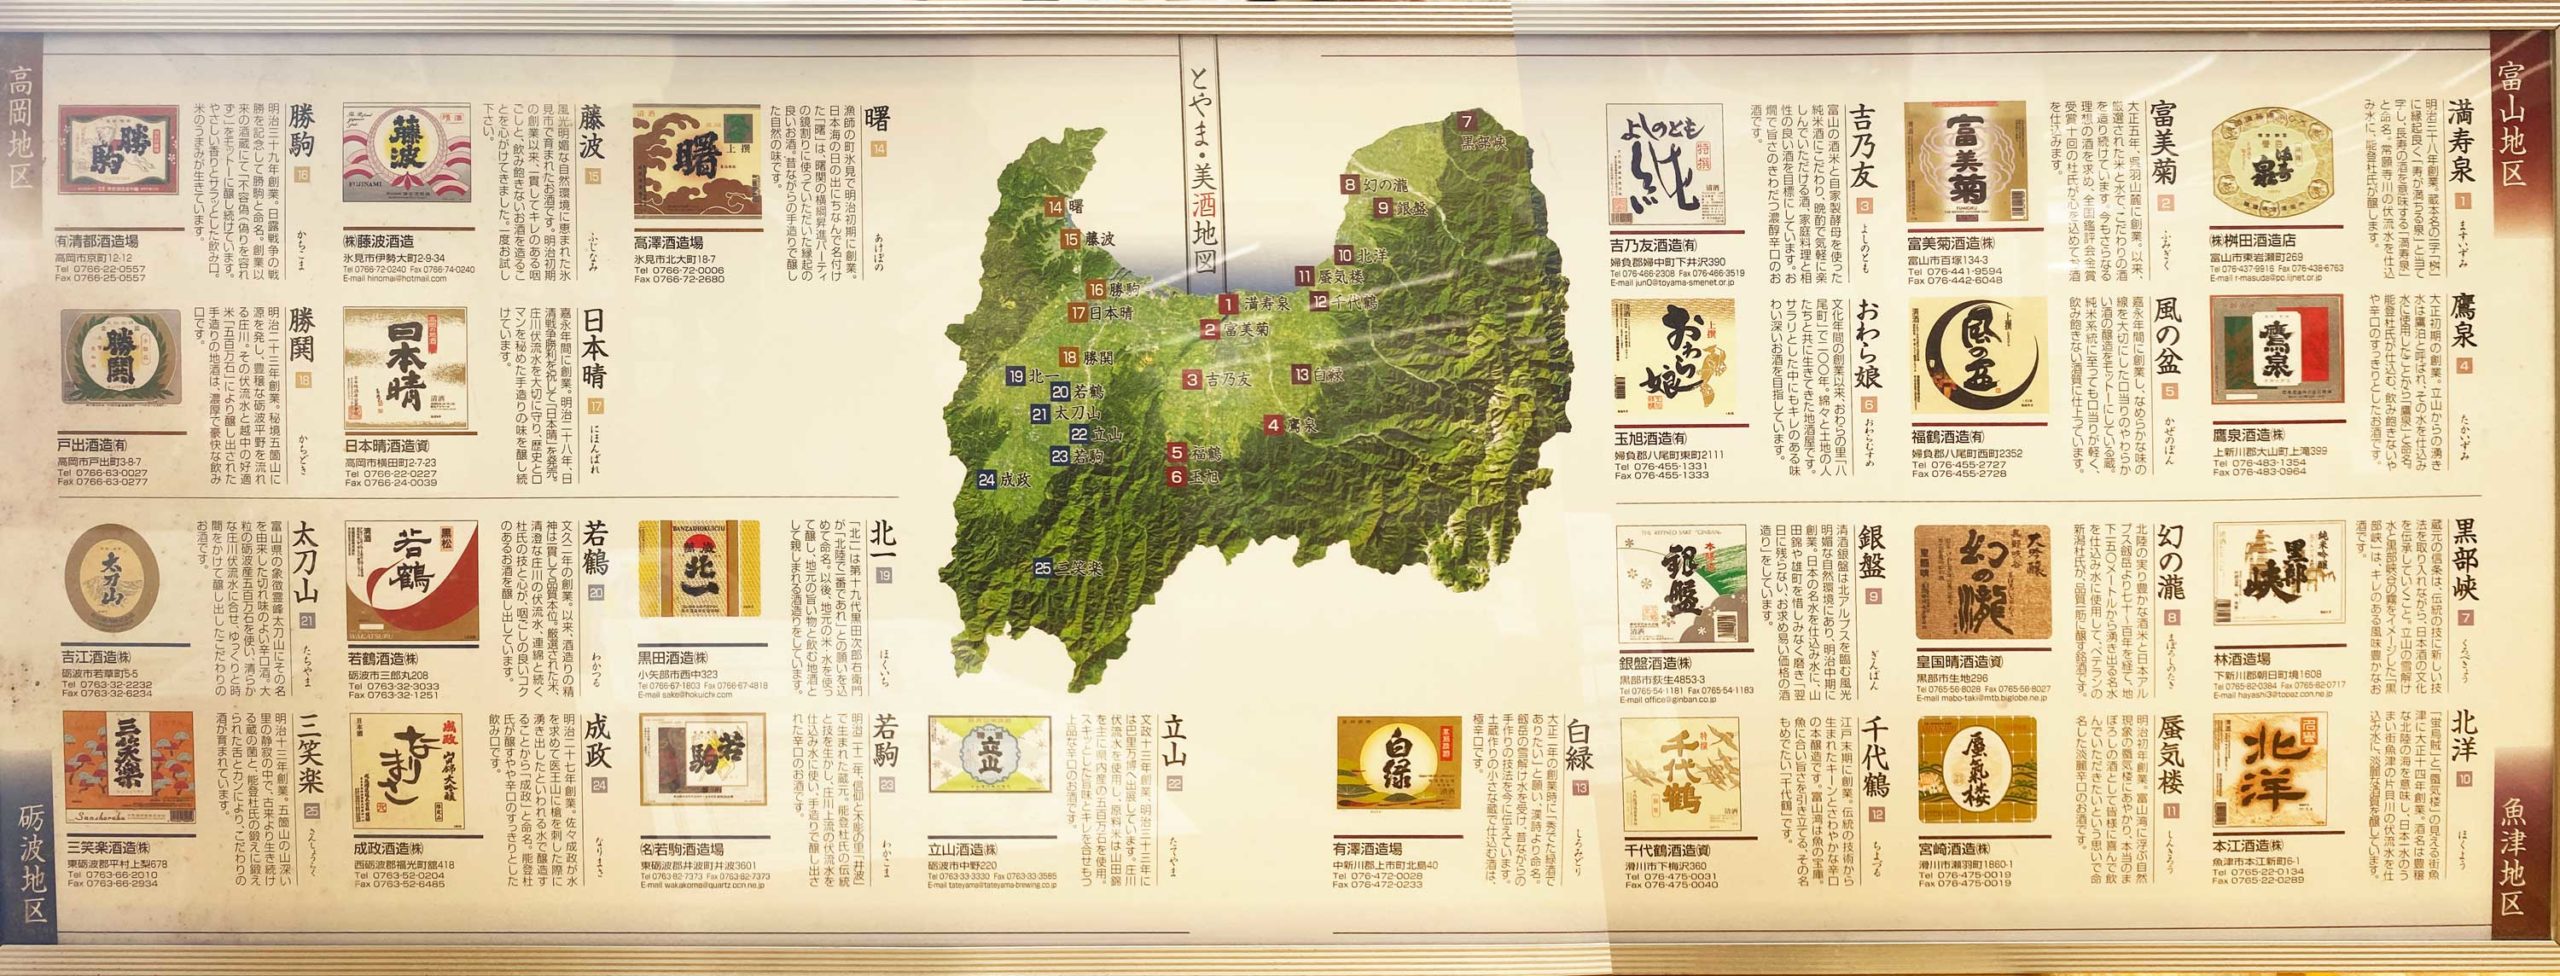 富山県内の前酒蔵まとめマップ(廃業した酒蔵も)